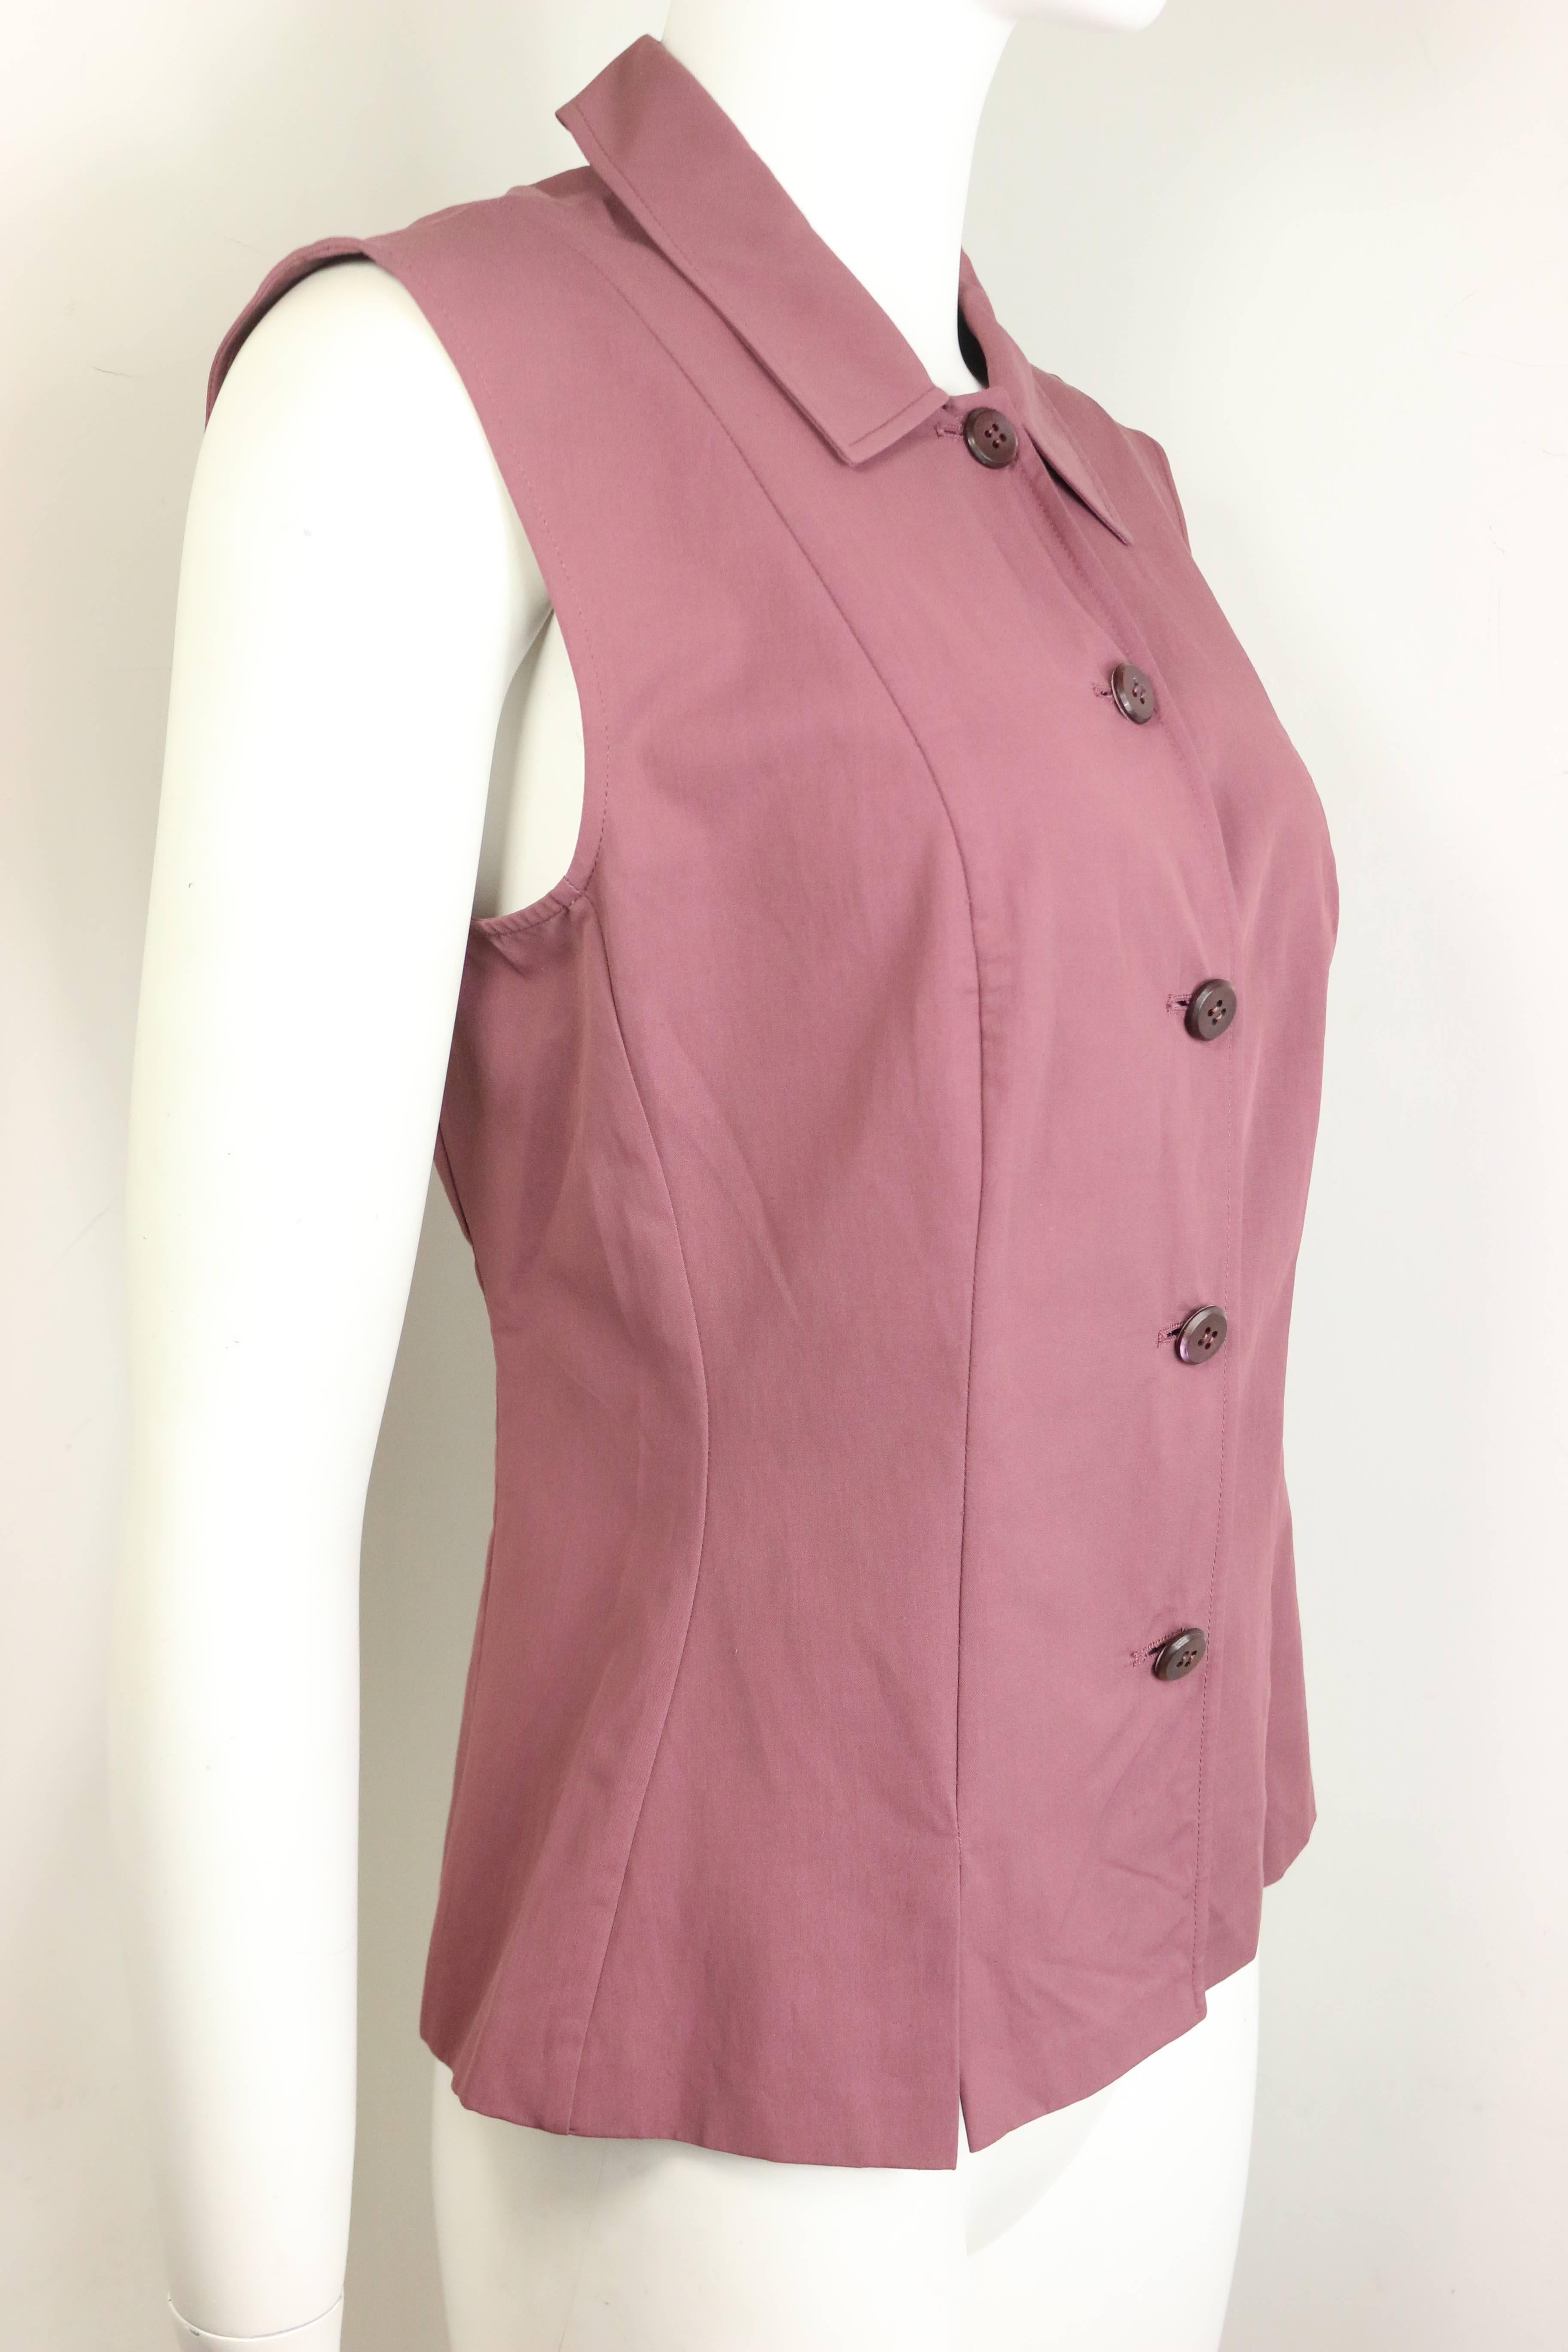 pink sleeveless shirts